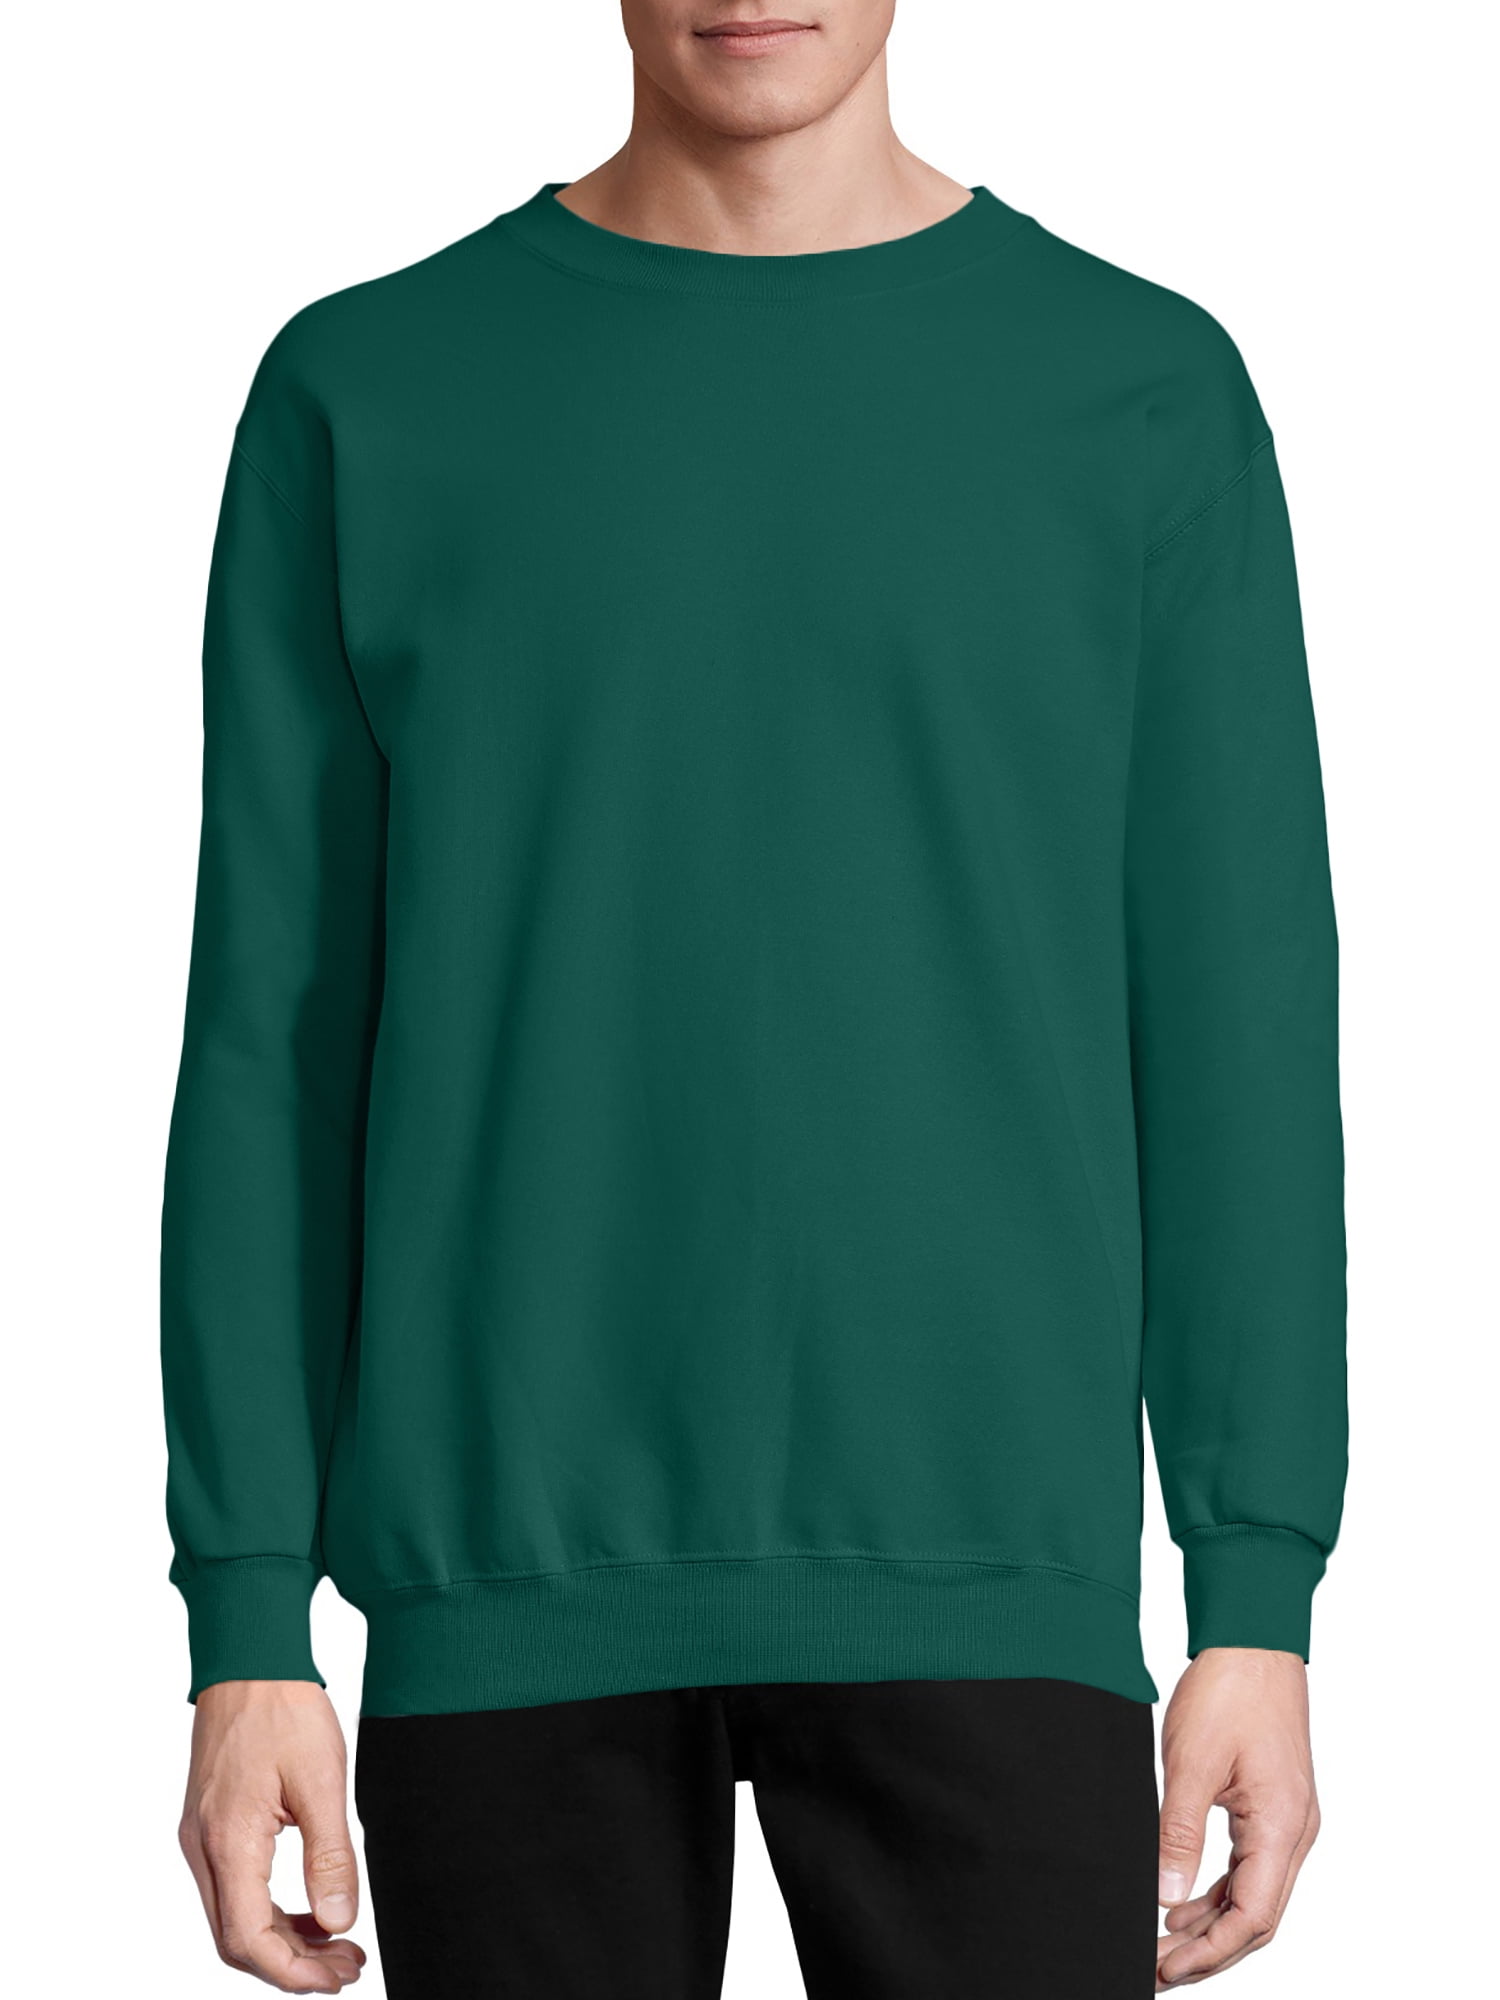 Hanes Crewneck Sweatshirt Ultimate Coton Adulte Polaire S-3XL poids moyen 